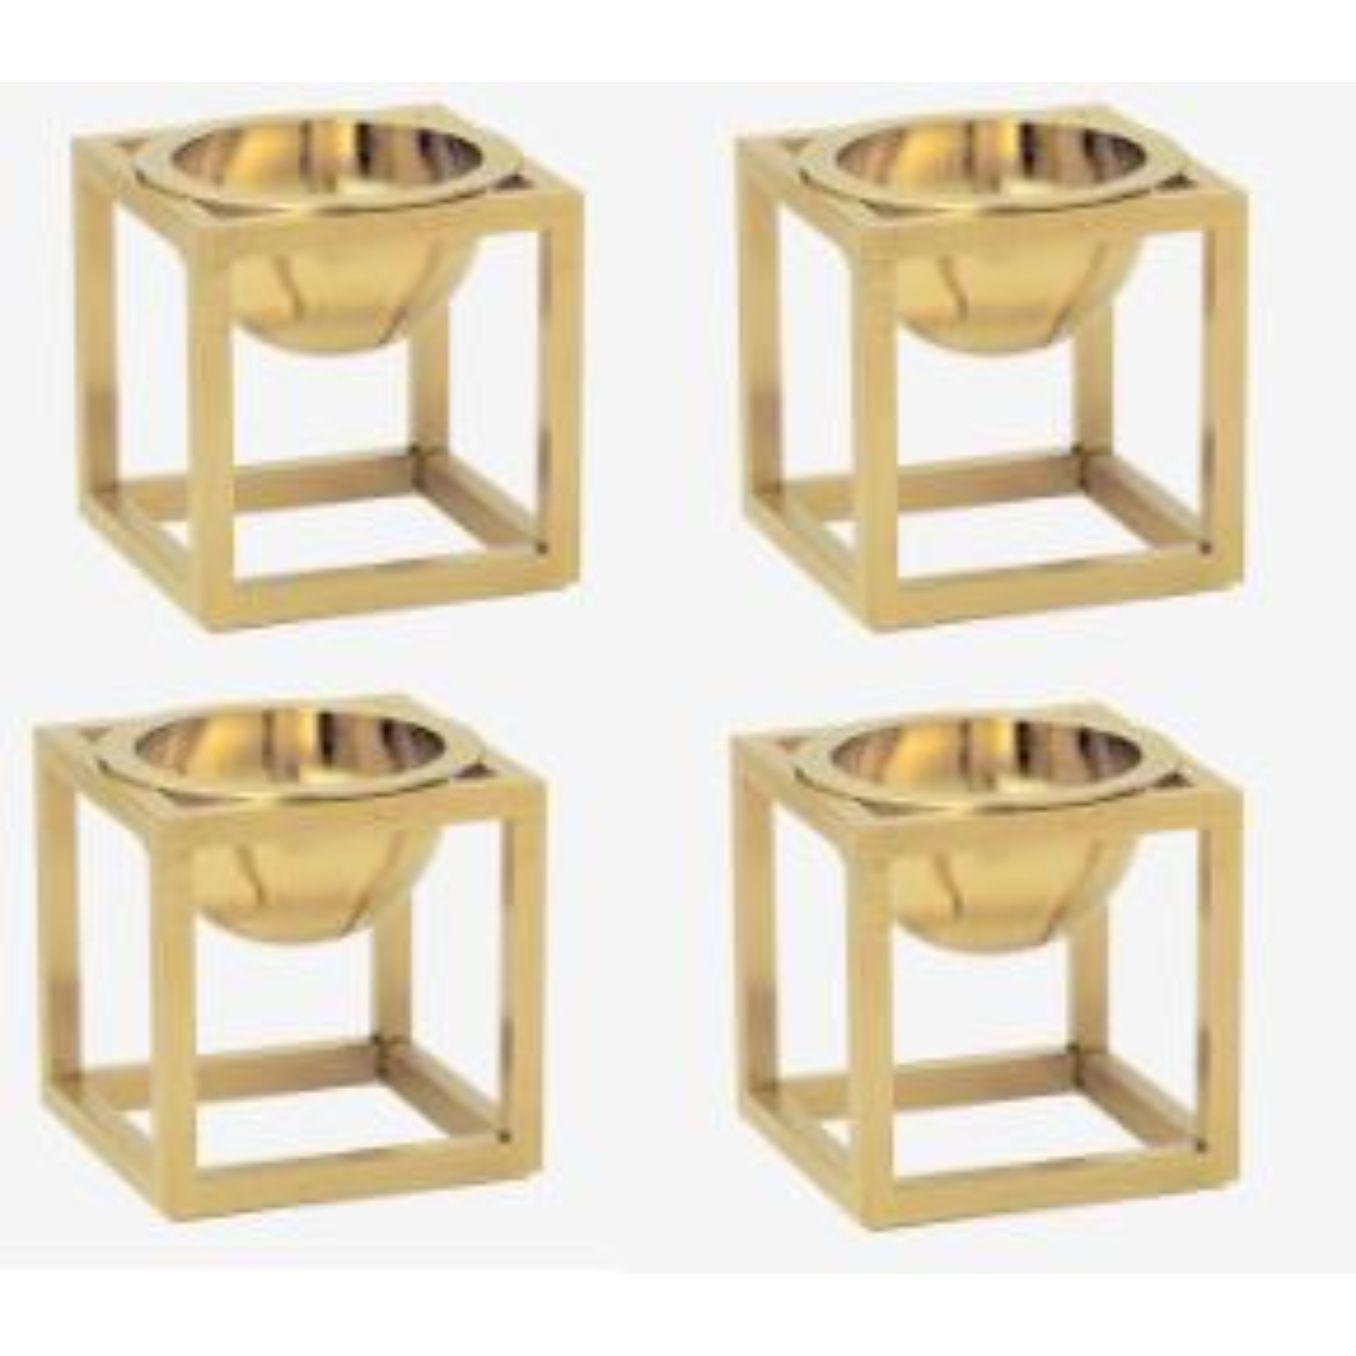 Ensemble de 4 mini-bols Kubus en plaqué or de Lassen
Dimensions : D 7 x L 7 x H 7 cm 
Matériaux : Métal 
Poids : 0.40 Kg

Le Kubus Bowl est basé sur des croquis originaux de Mogens Lassen, et contient des éléments du Bauhaus, dont Mogens Lassen